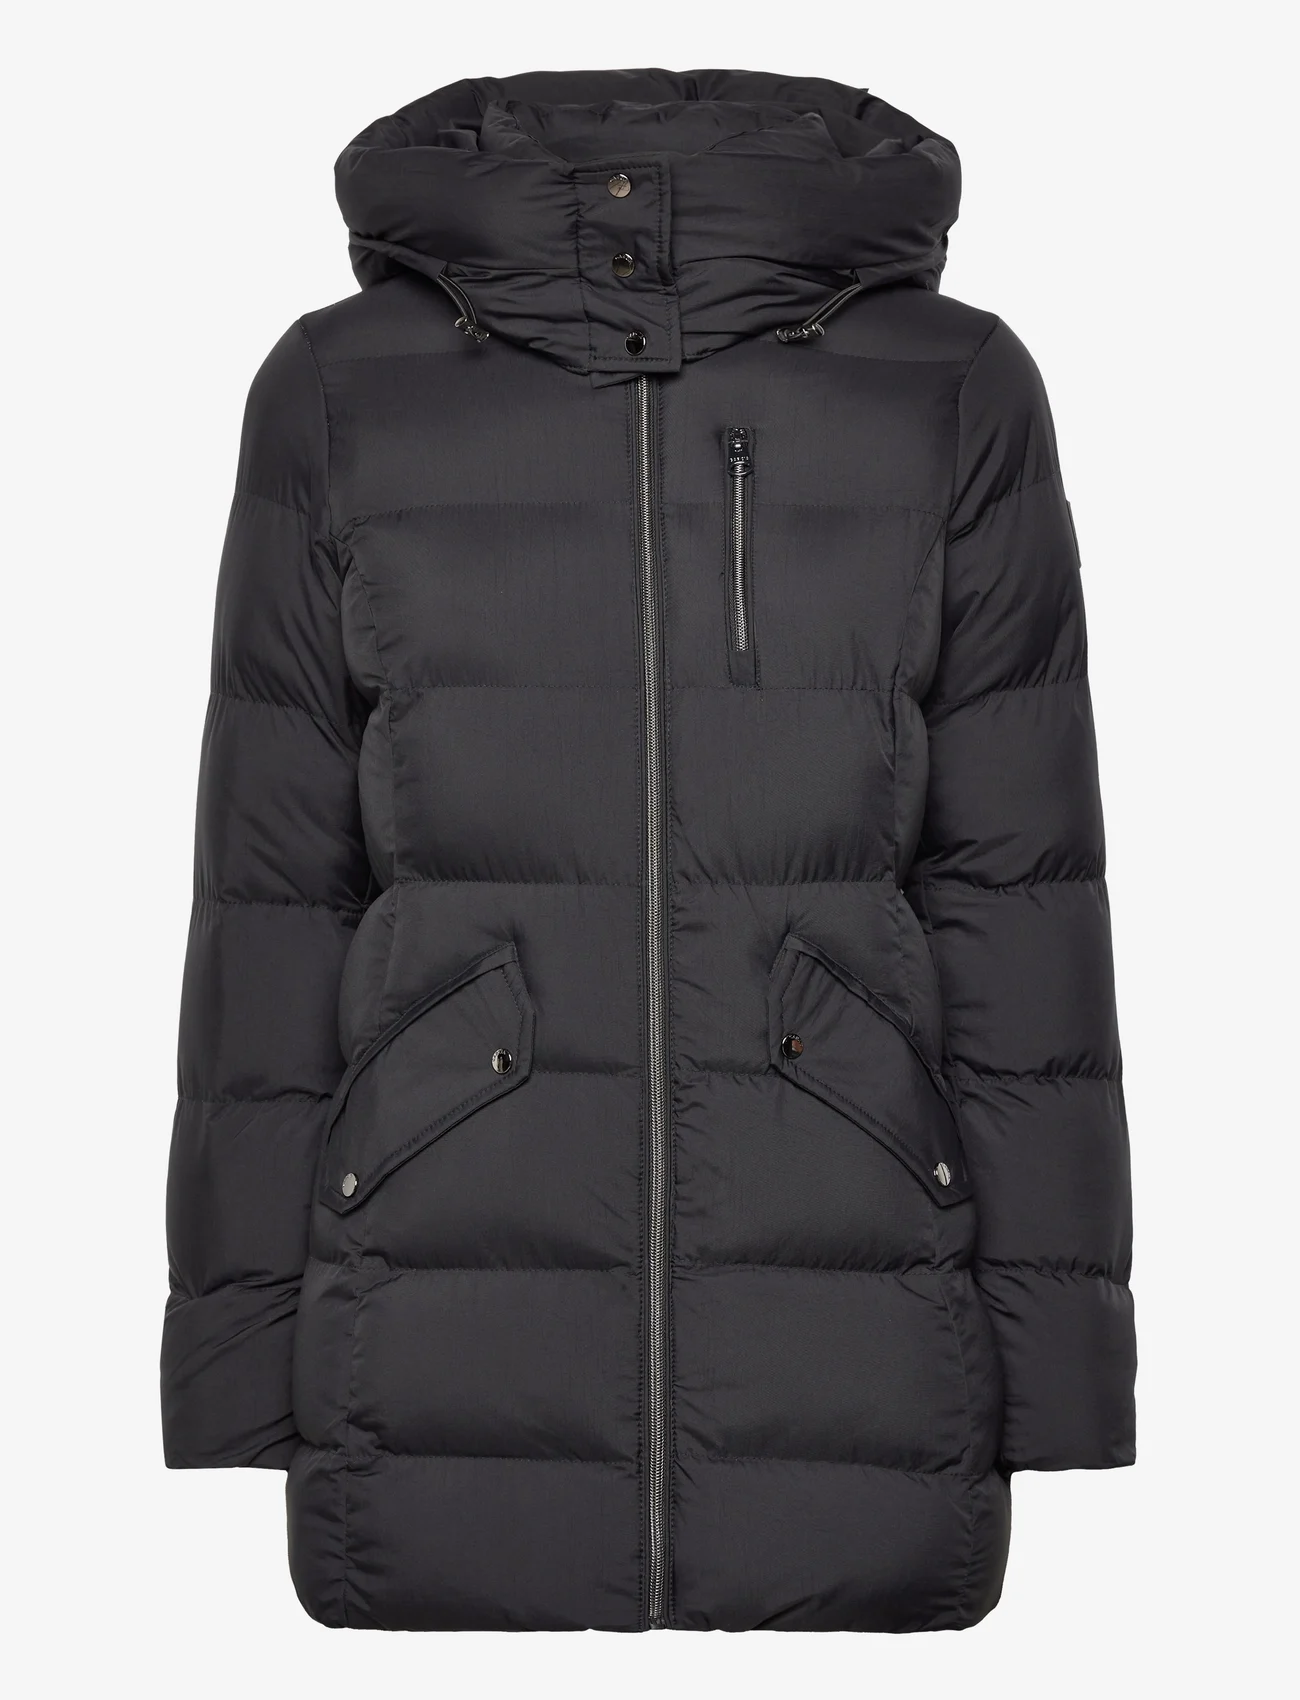 Garcia - ladies outdoor jacket - winterjacken - black - 0